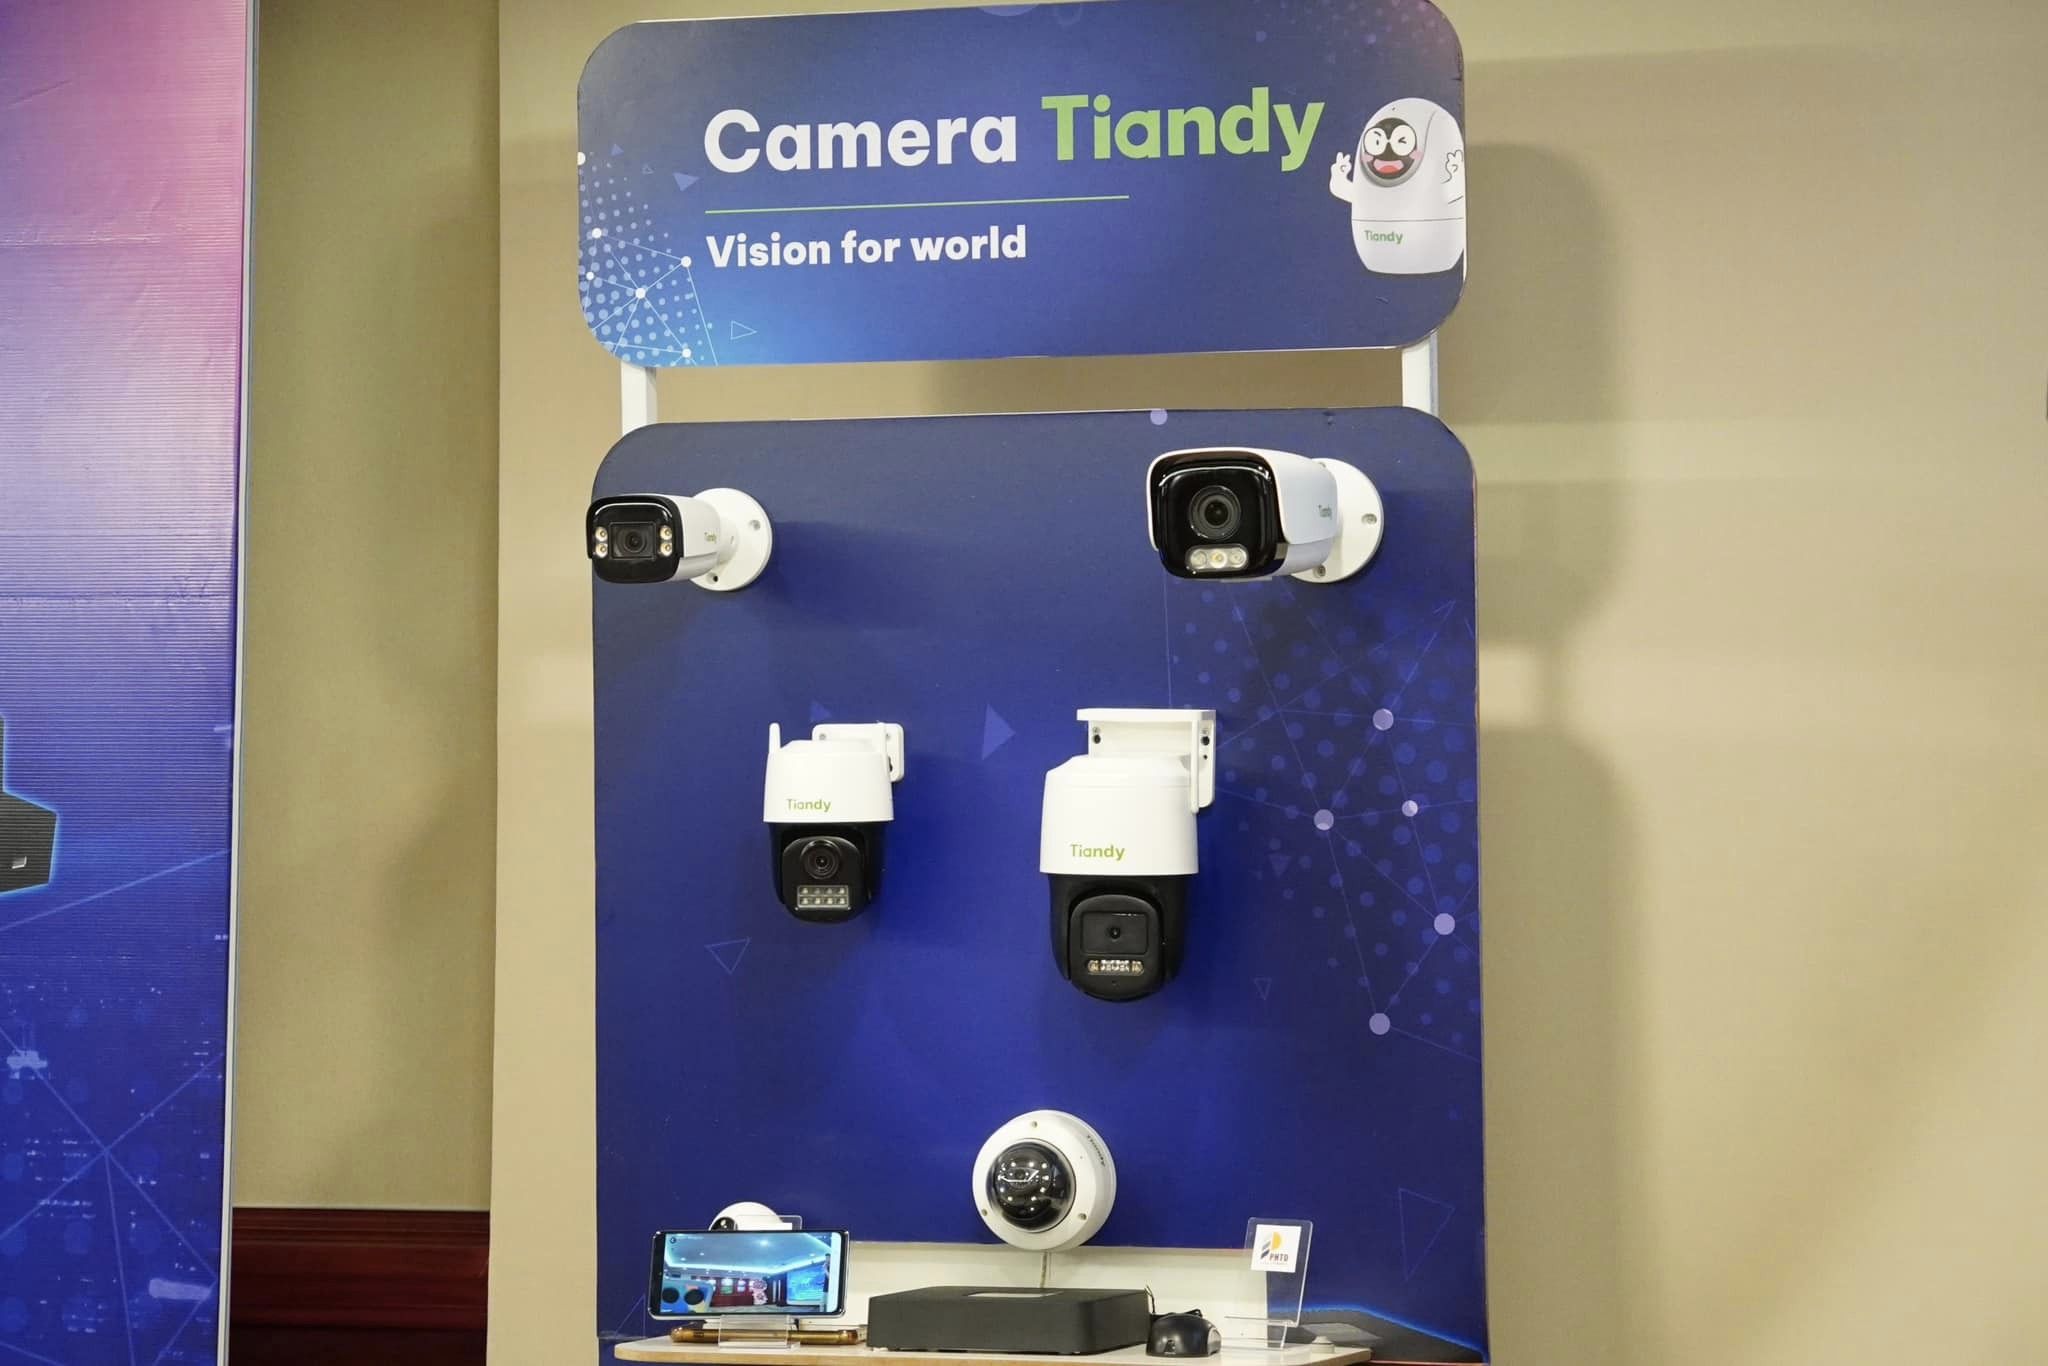 Thương hiệu camera Tiandy ra mắt, giá mềm nhưng chất lượng cao - camera tiady